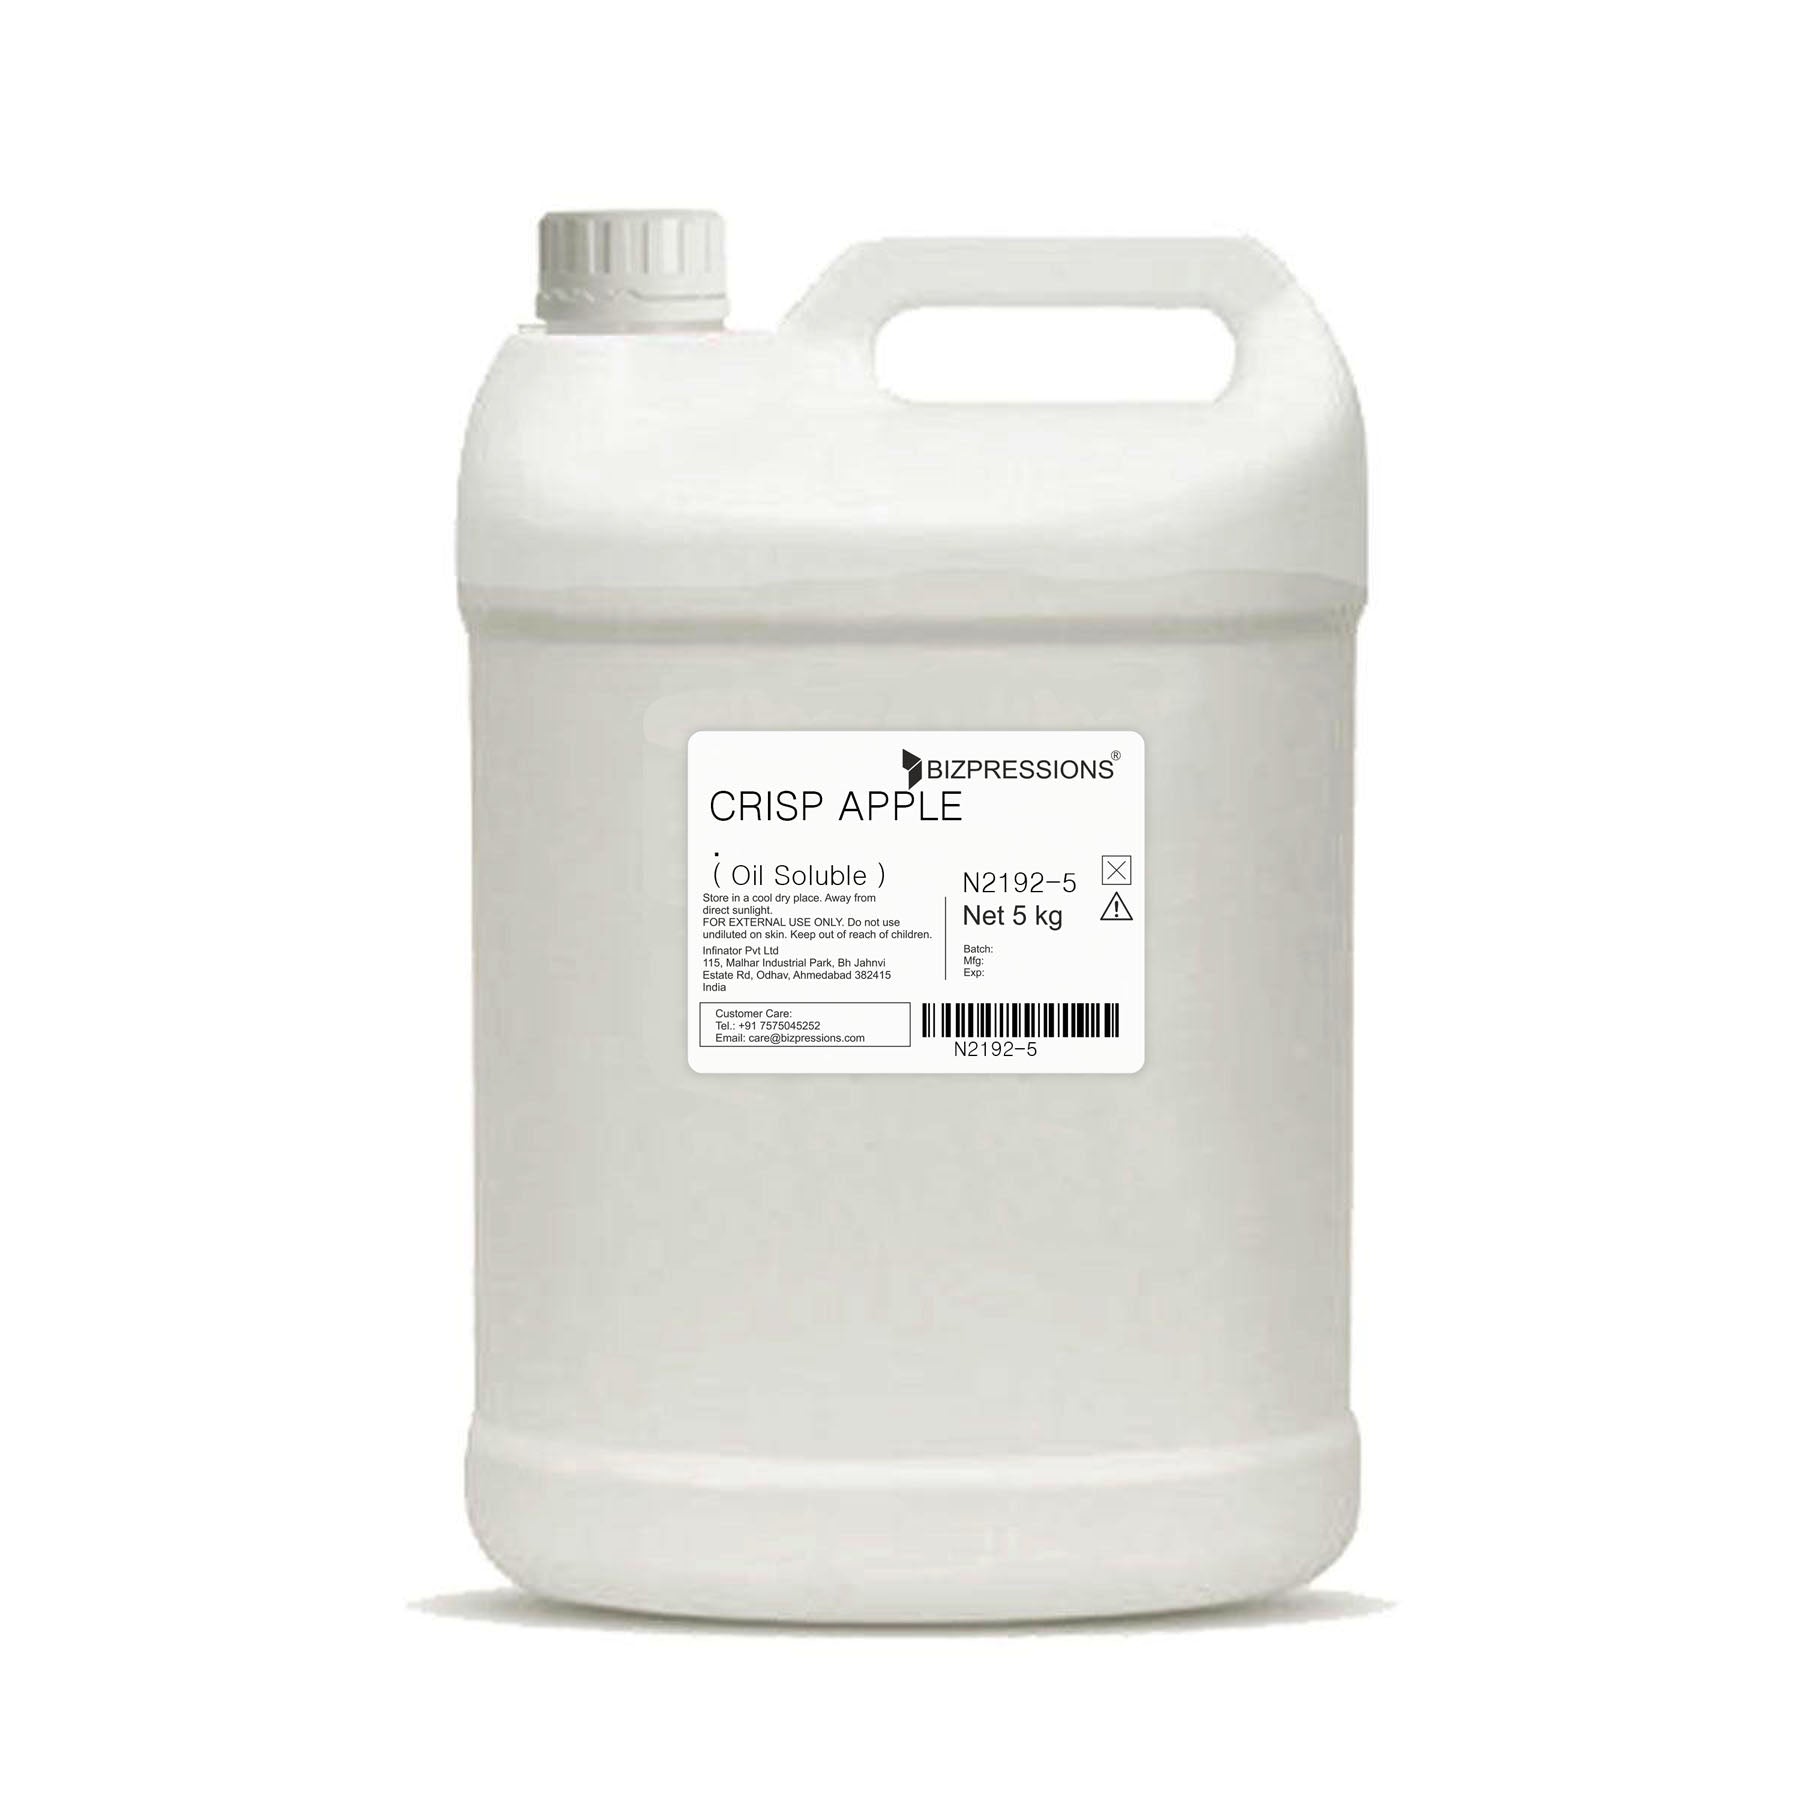 CRISP APPLE - Fragrance ( Oil Soluble ) - 5 kg